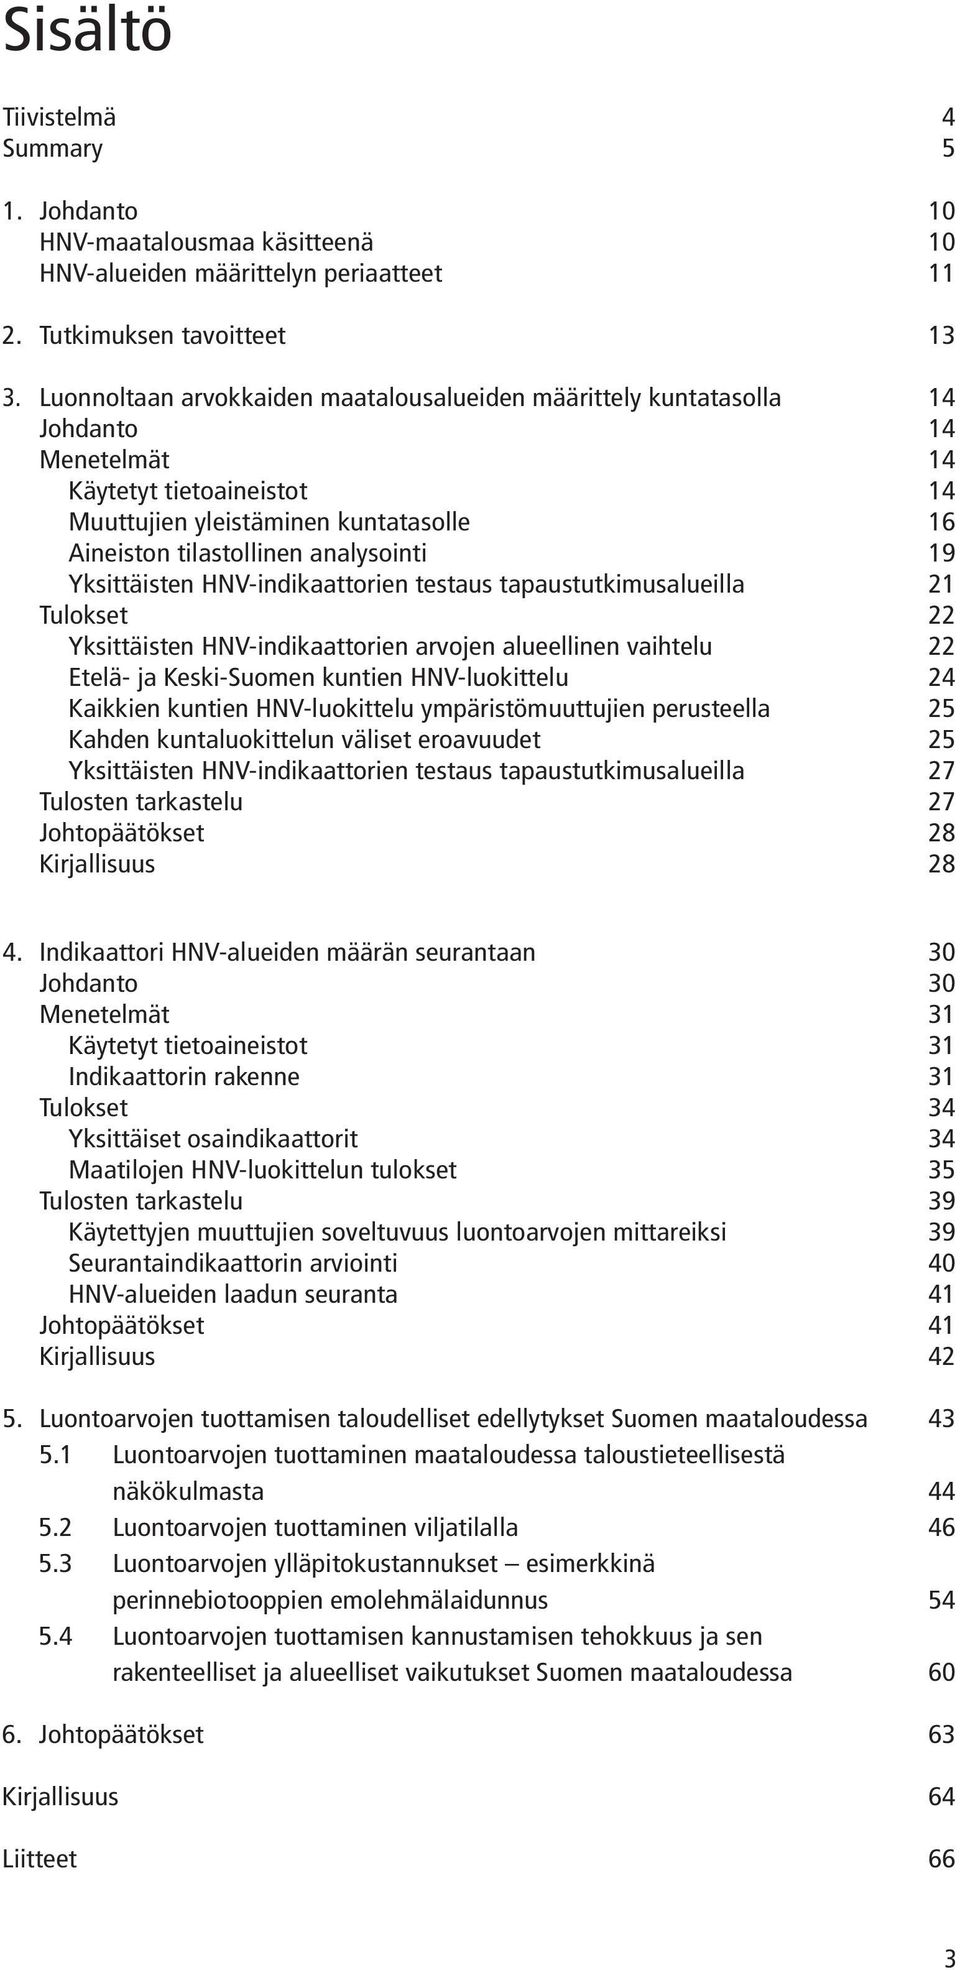 19 Yksittäisten HNV-indikaattorien testaus tapaustutkimusalueilla 21 Tulokset 22 Yksittäisten HNV-indikaattorien arvojen alueellinen vaihtelu 22 Etelä- ja Keski-Suomen kuntien HNV-luokittelu 24